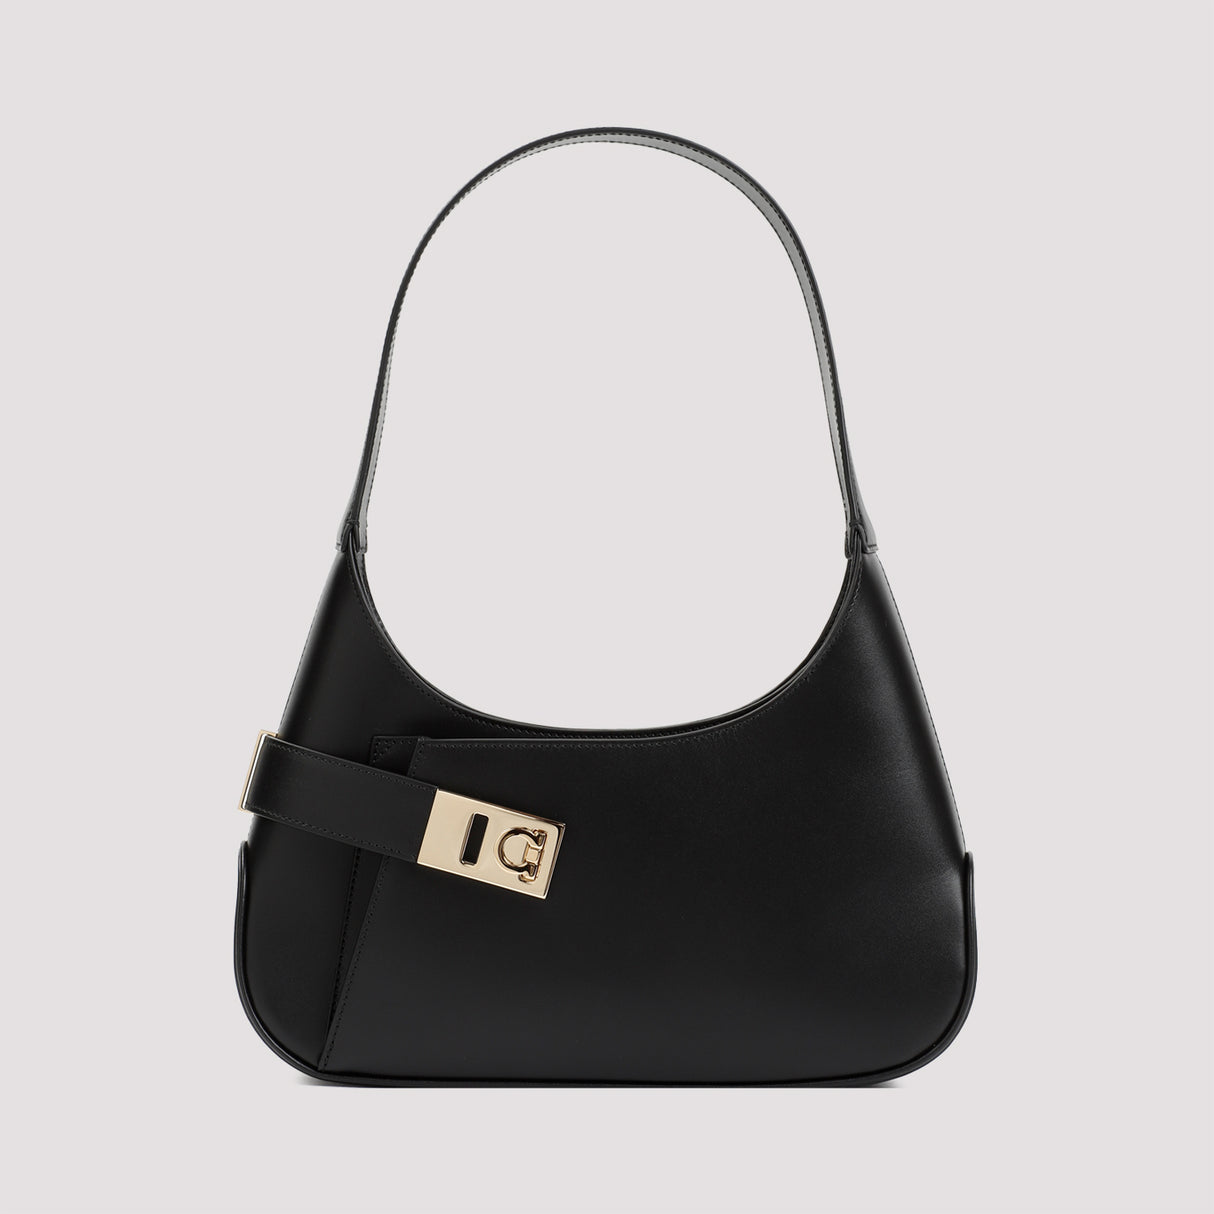 Túi da đen tuyệt đẹp dành cho phụ nữ - Bộ sưu tập SS24